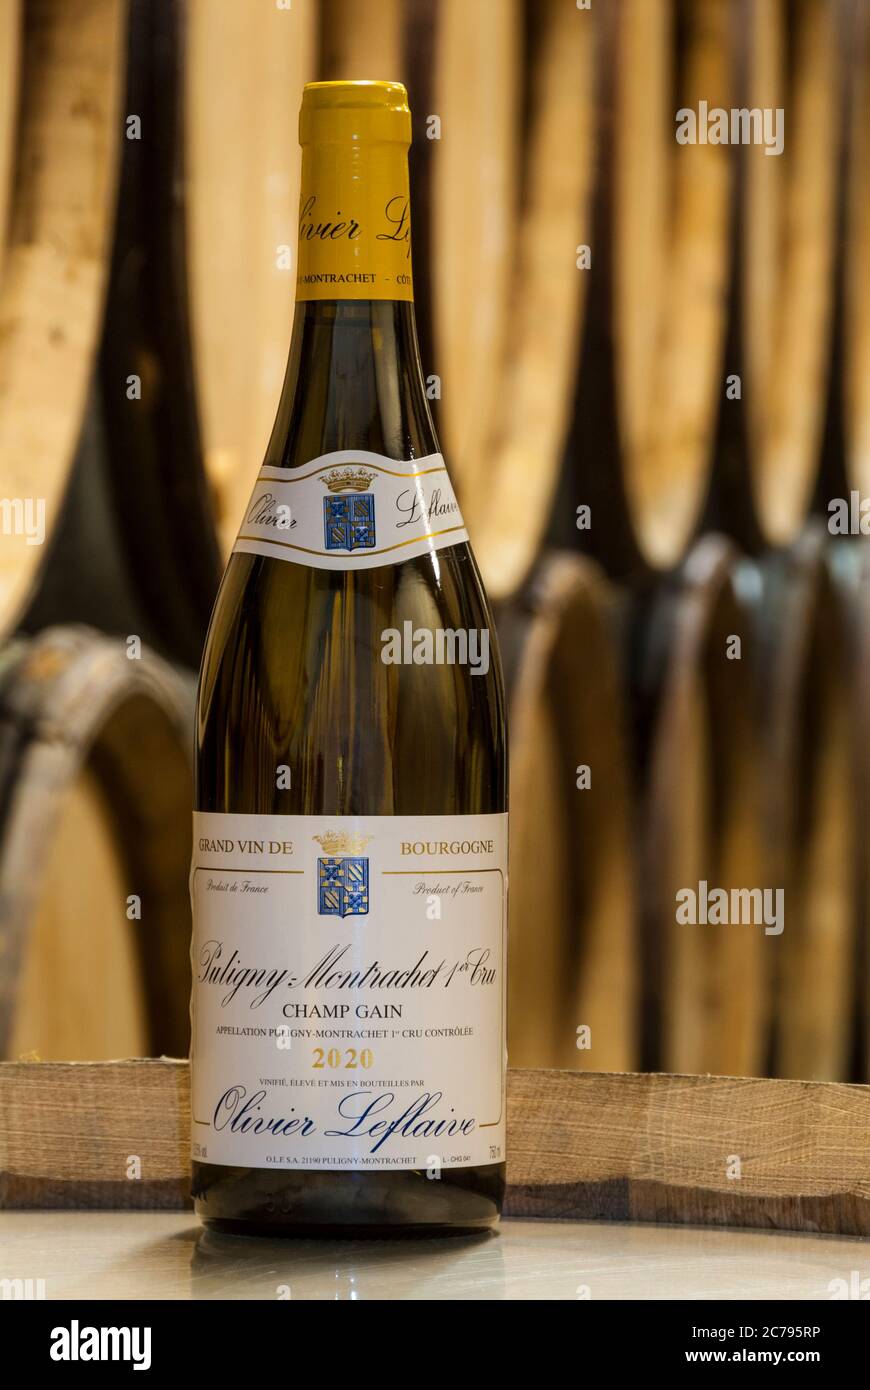 PULIGNY-MONTRACHET 2020 OLIVIER LEFLAIR Premier cru ‘champ gain’ bouteille de vin sur baril dans cave à vins barques Bourgogne Côte d’Or France Banque D'Images